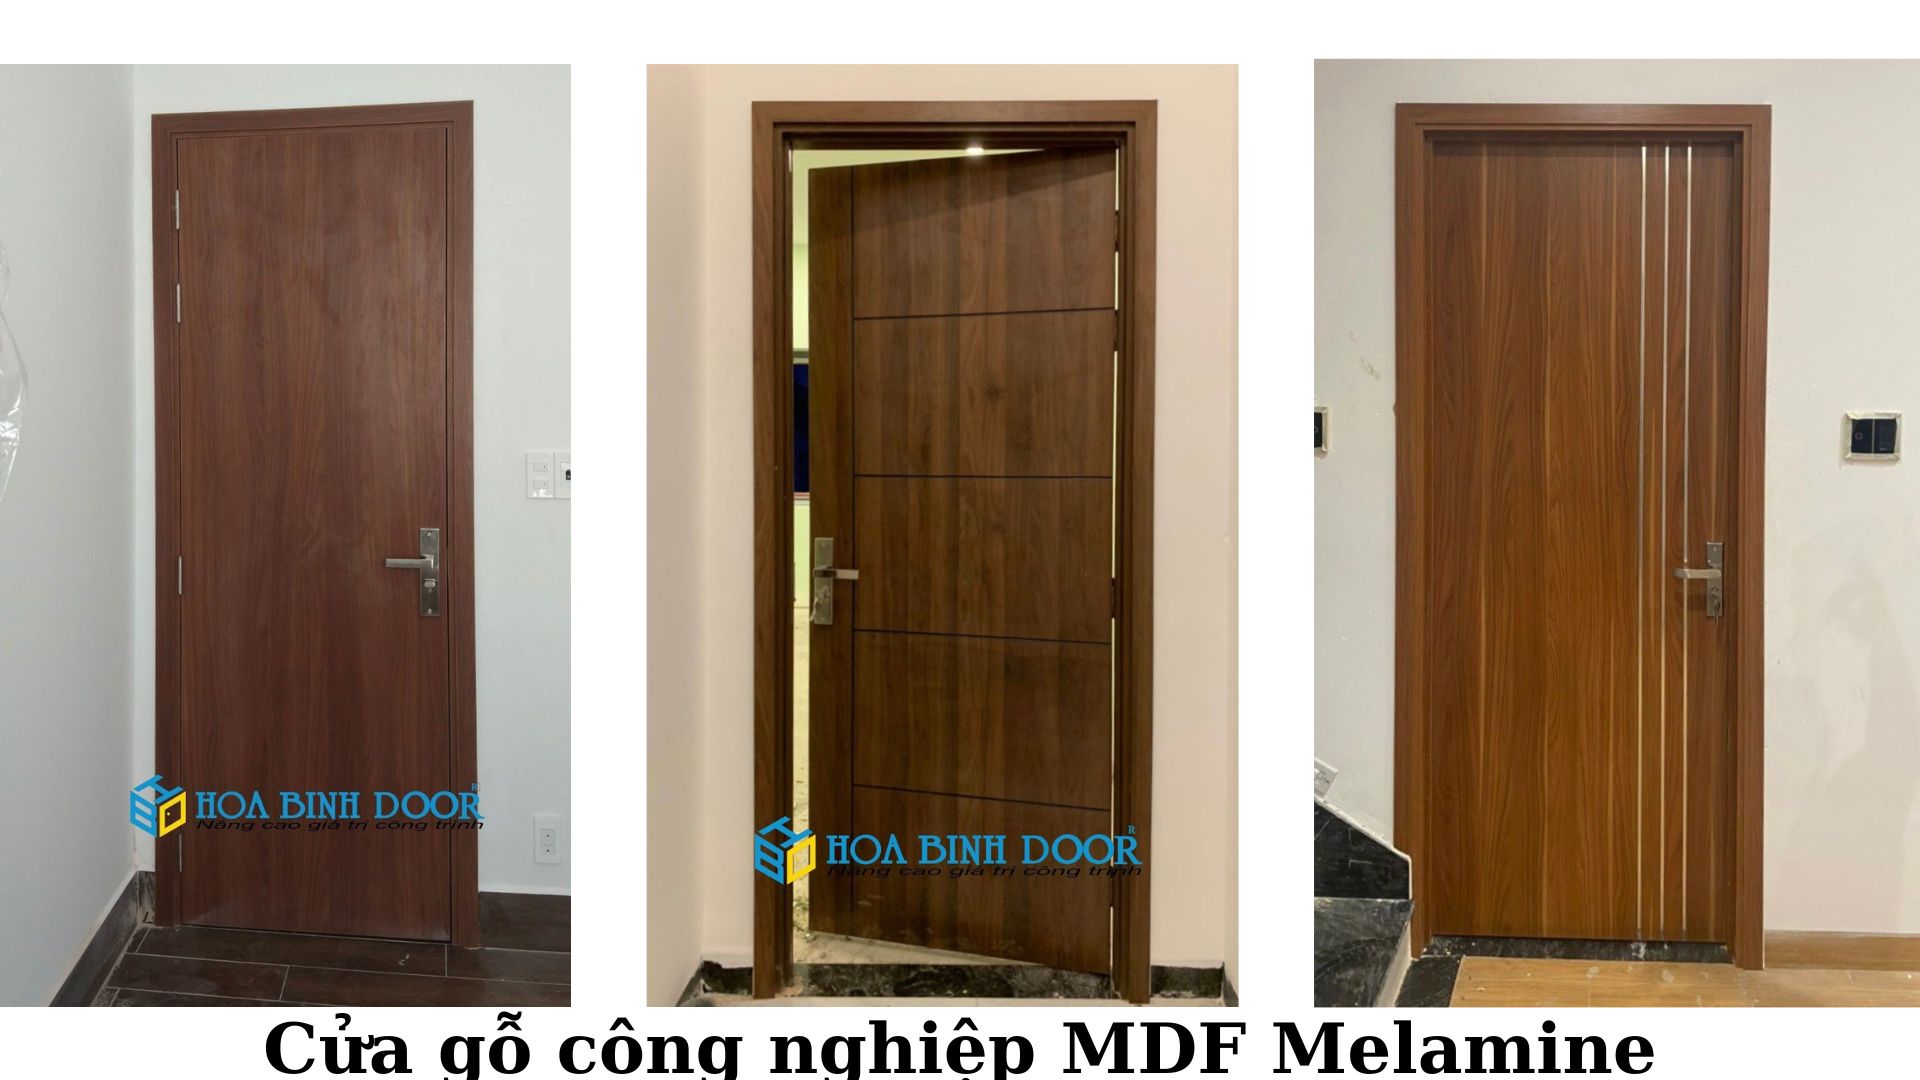 Cửa MDF Melamine tại Bình Thạnh - Cửa gỗ An Cường